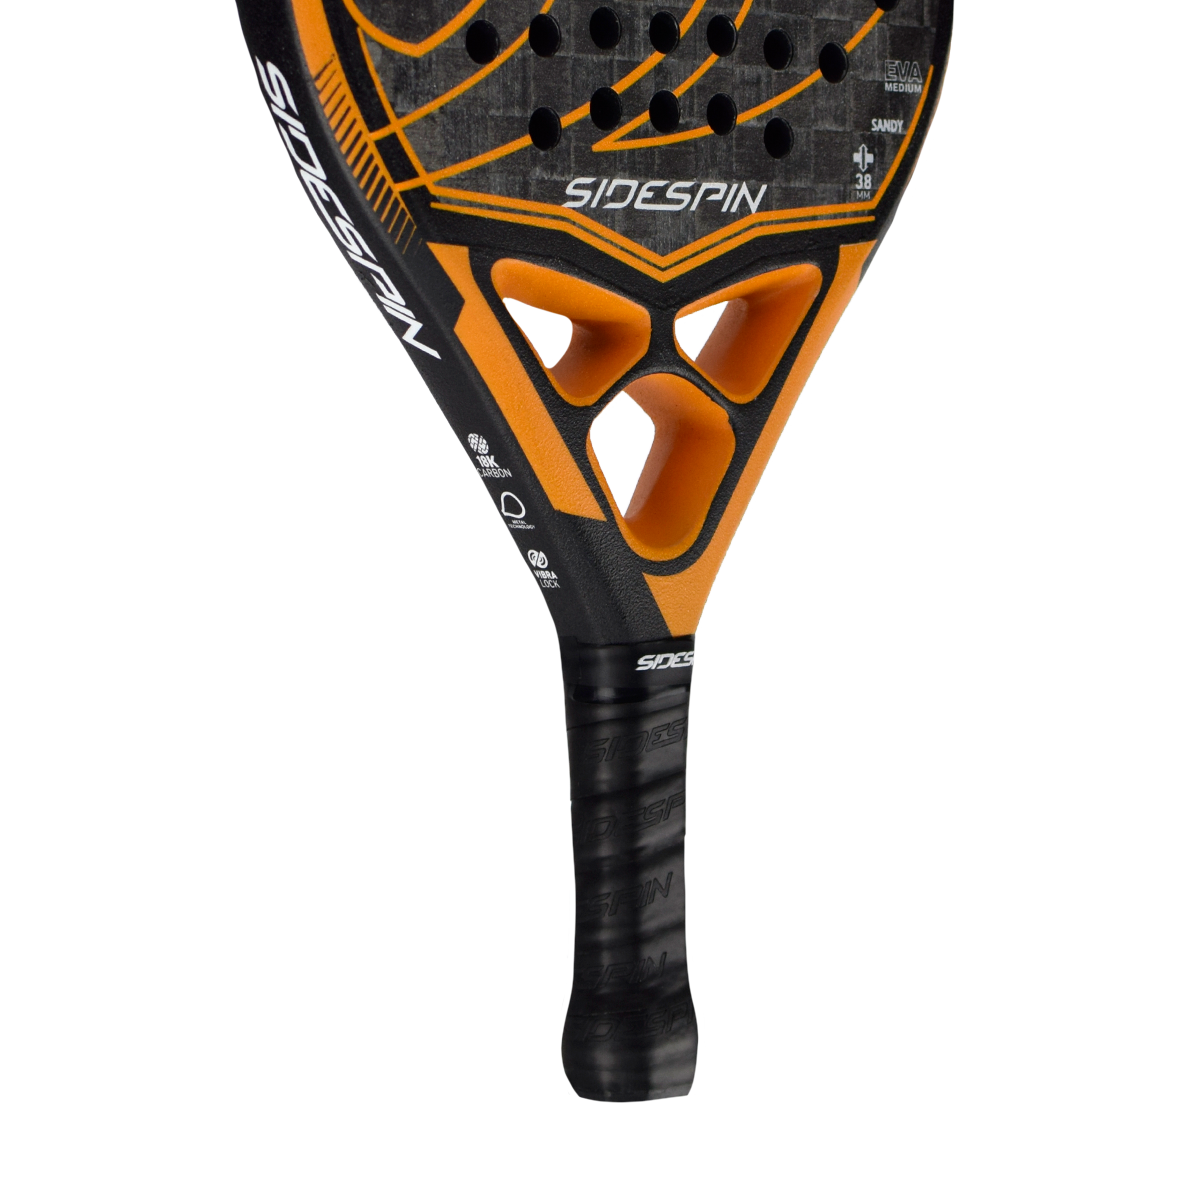 4018 Padel Raquette Tennis Fibre de carbone Soft Eva Face Tennis Paddle  Raquette de raquette avec housse de sac Padle,1